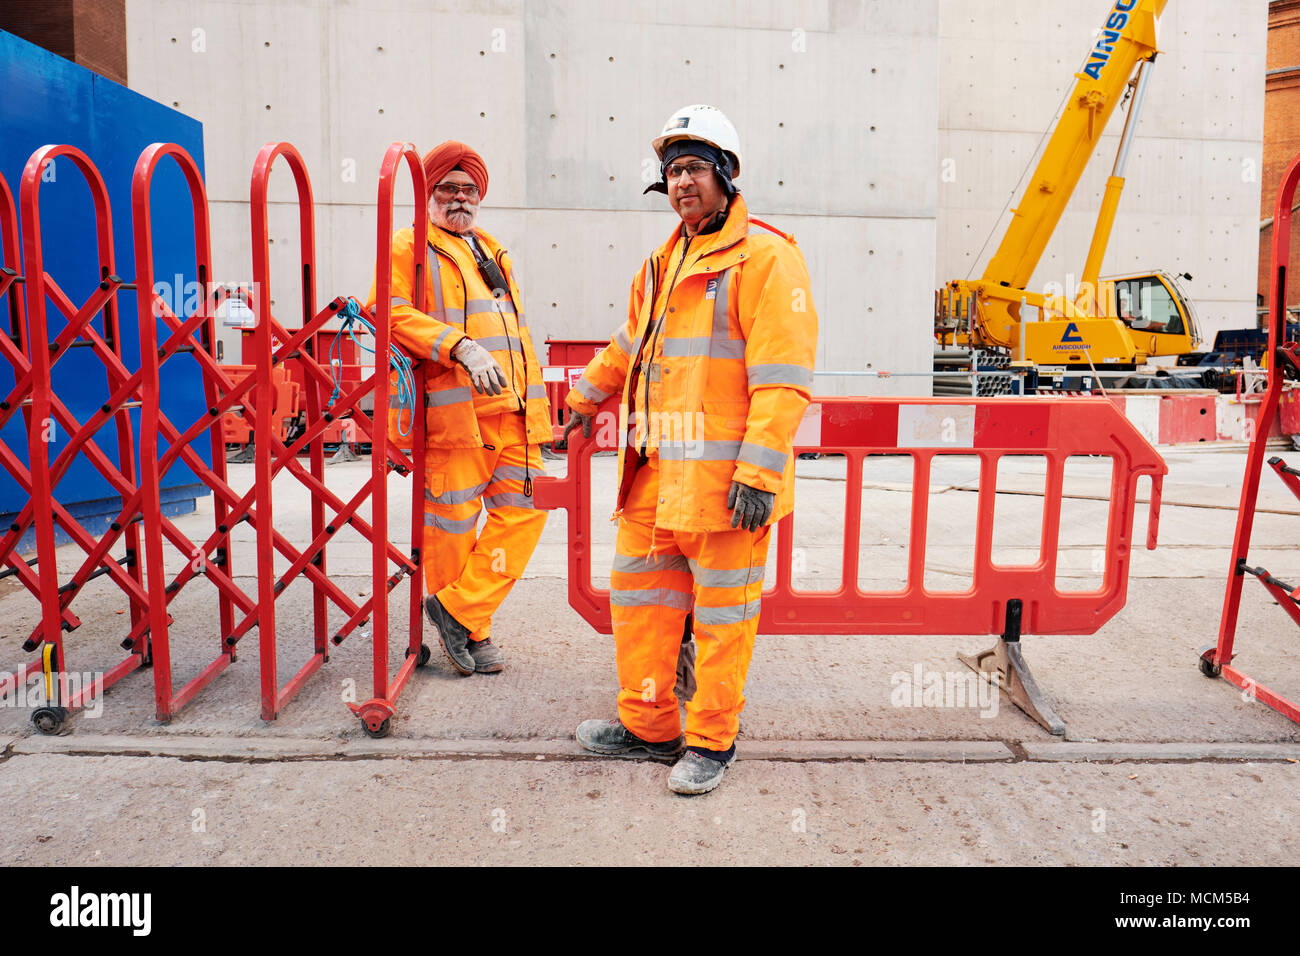 Sikh harten Hut Befreiung - Crossrail Arbeitnehmer in hohe Sichtbarkeit berufsbekleidung vor Ort in London. Stockfoto